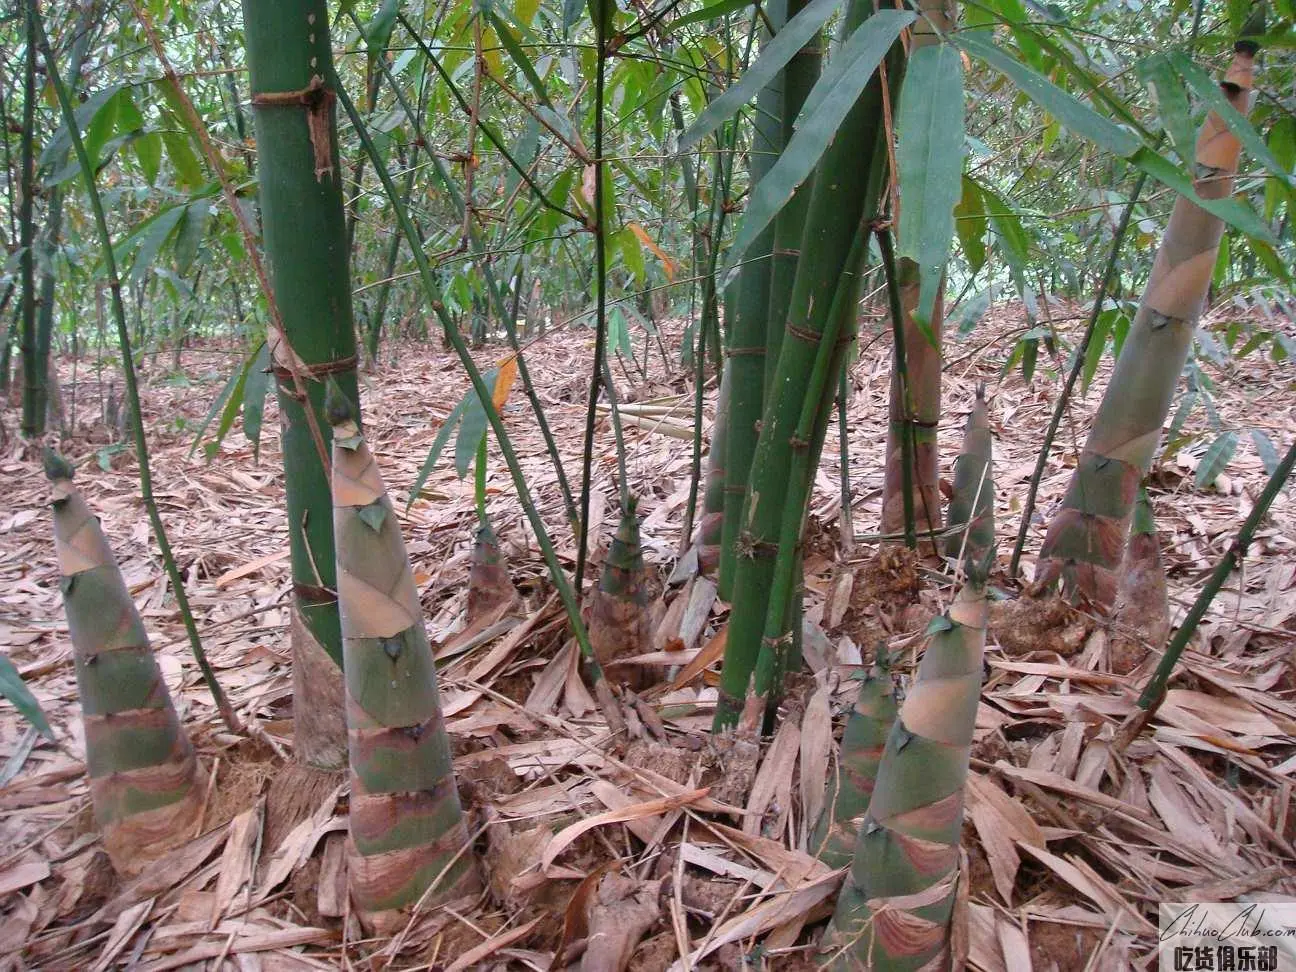 Xiniu Bamboo Shoots